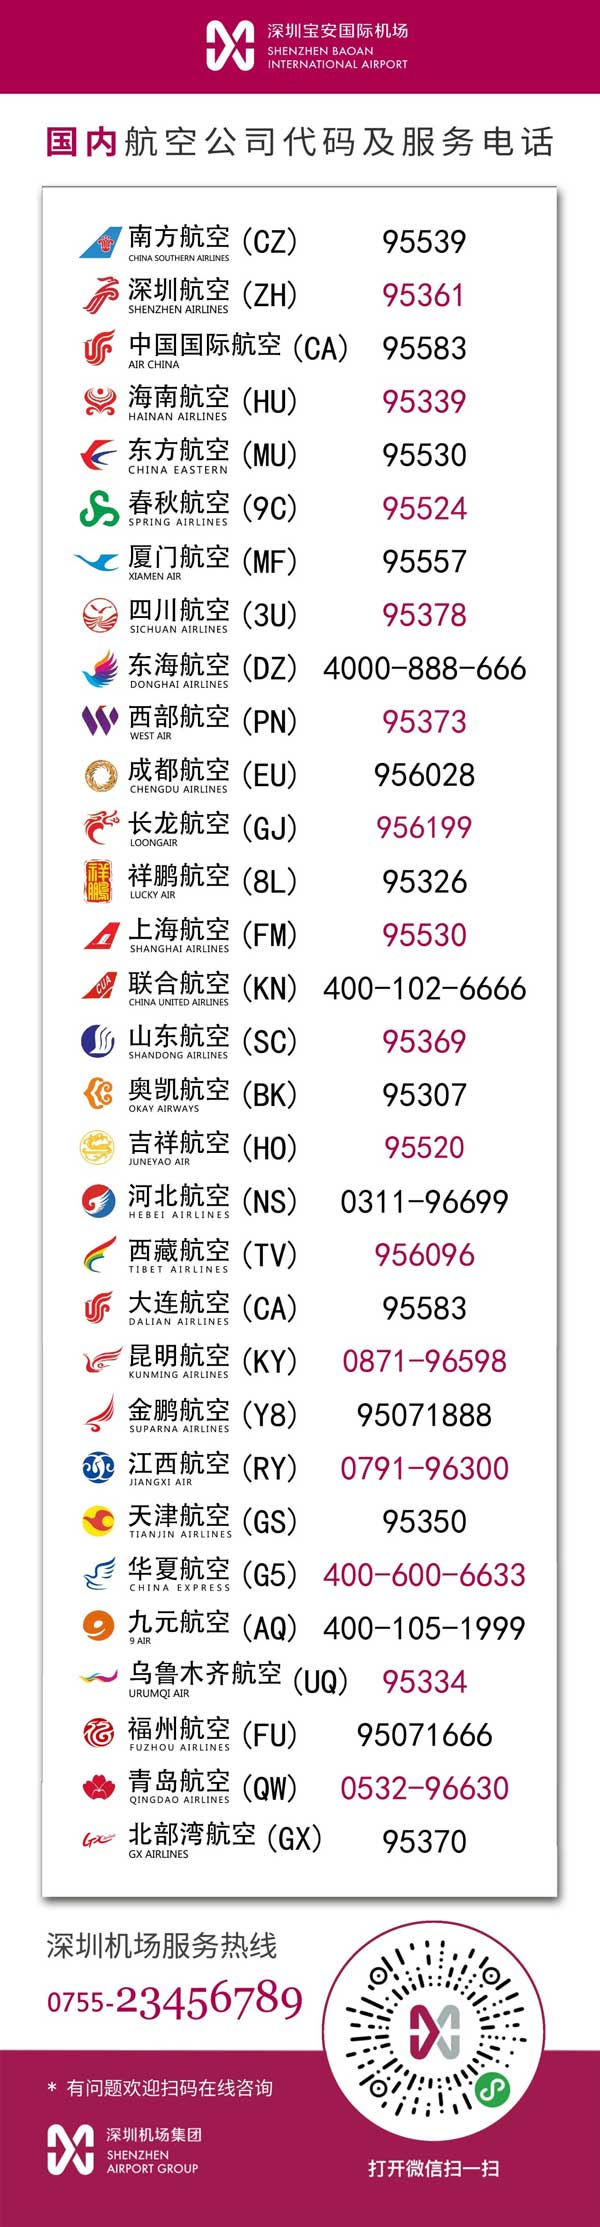 深圳全市公交、机场、铁路、地铁有序恢复运营 国内航空公司代码及服务电话